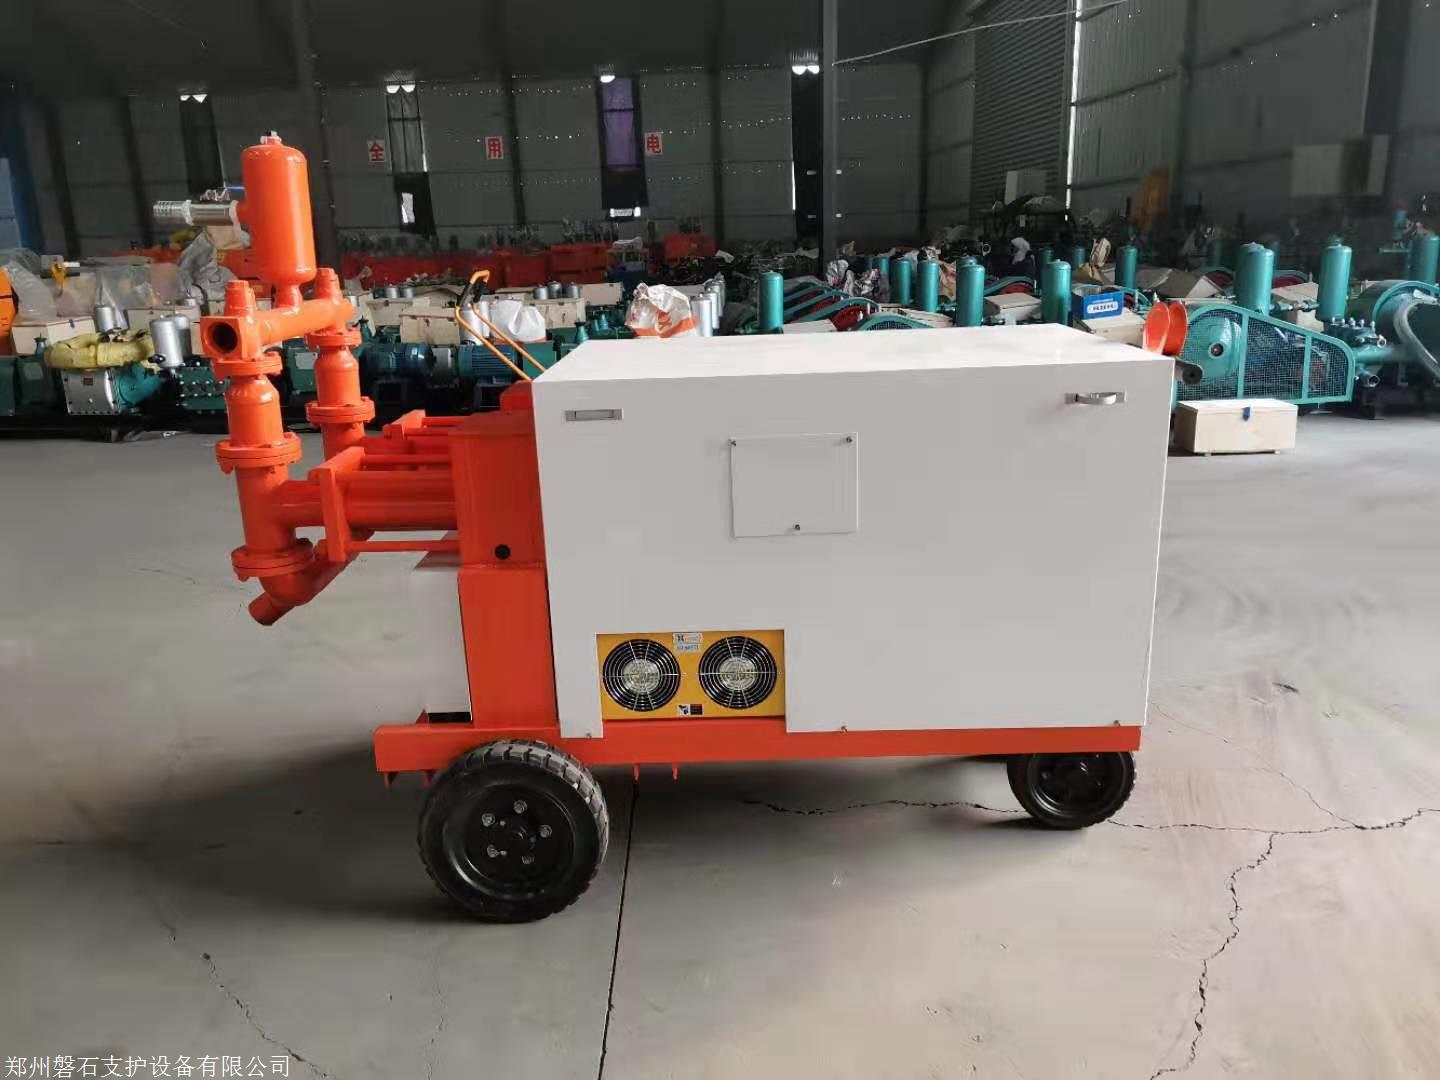 襄樊 WDSJ200塑料砂浆泵-视频